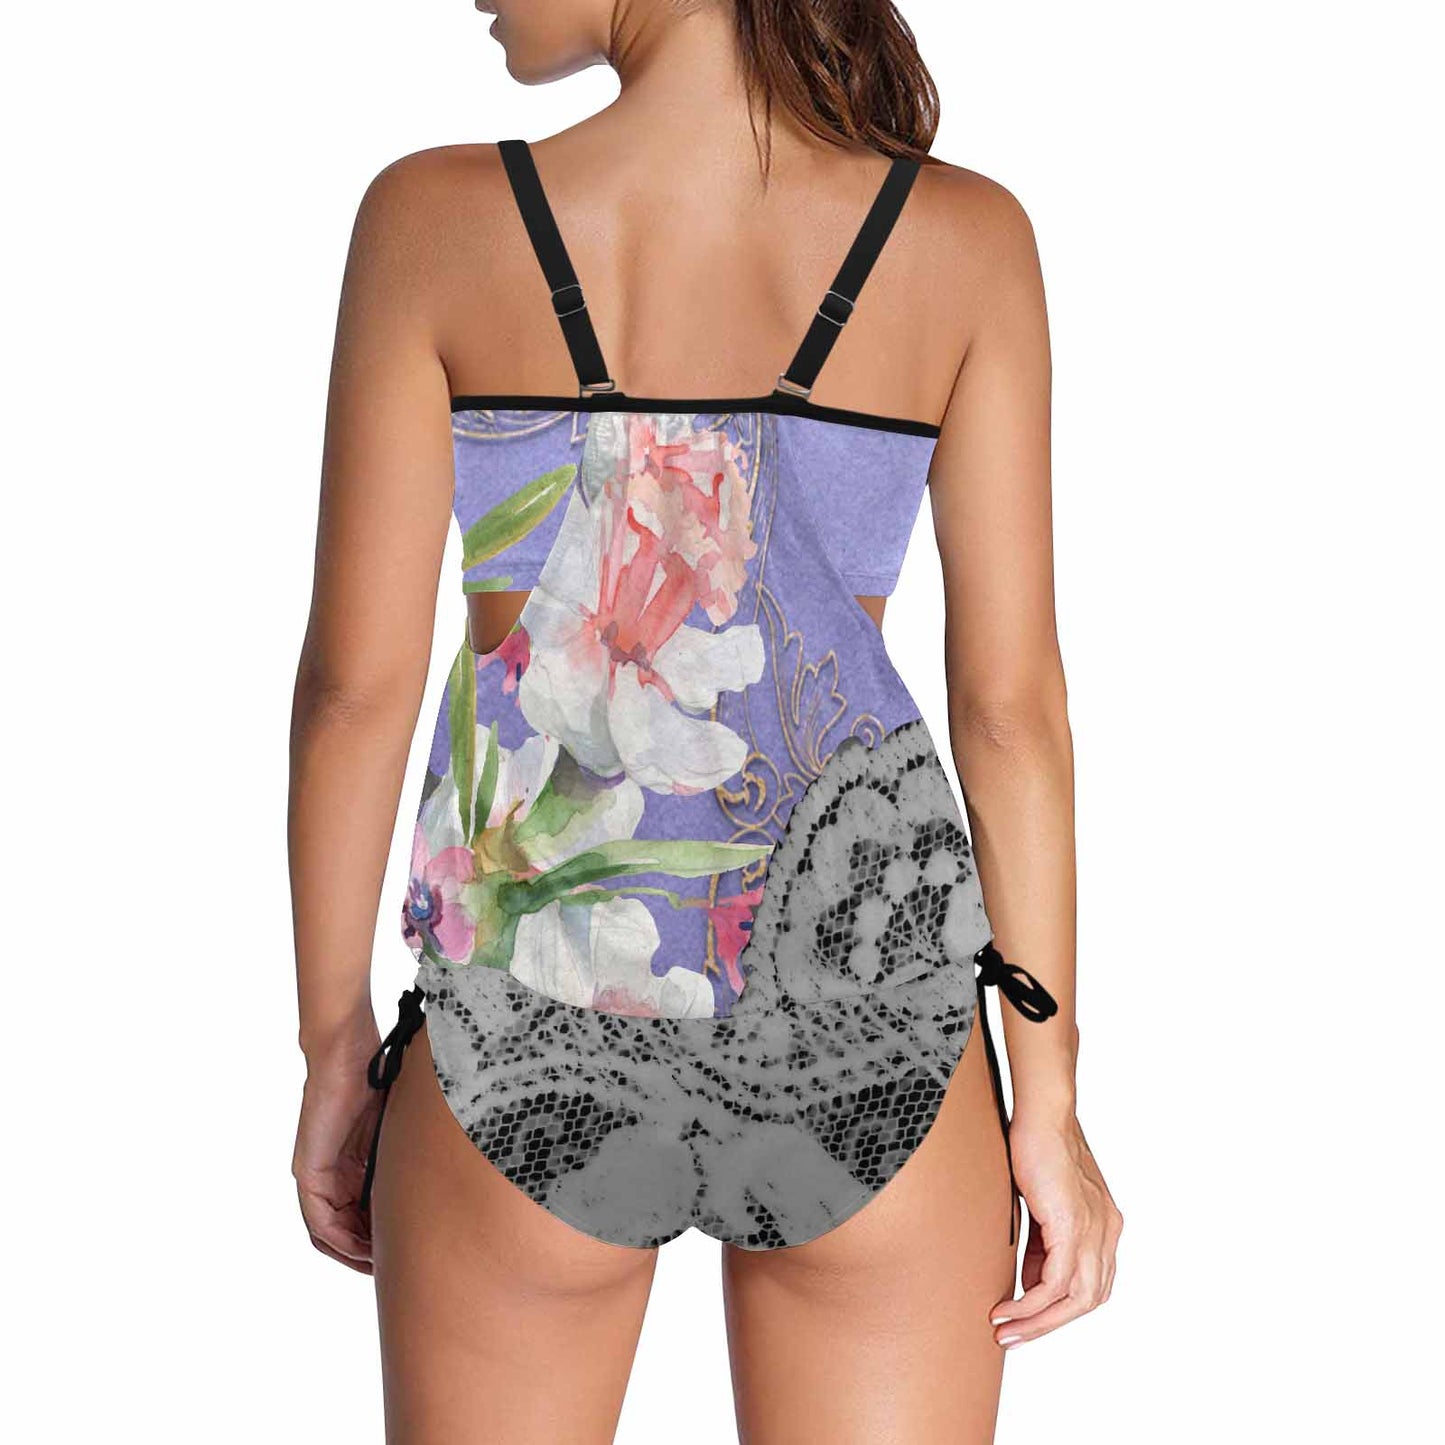 Tankini cover belly swim wear, Printed Victorian lace design 45B